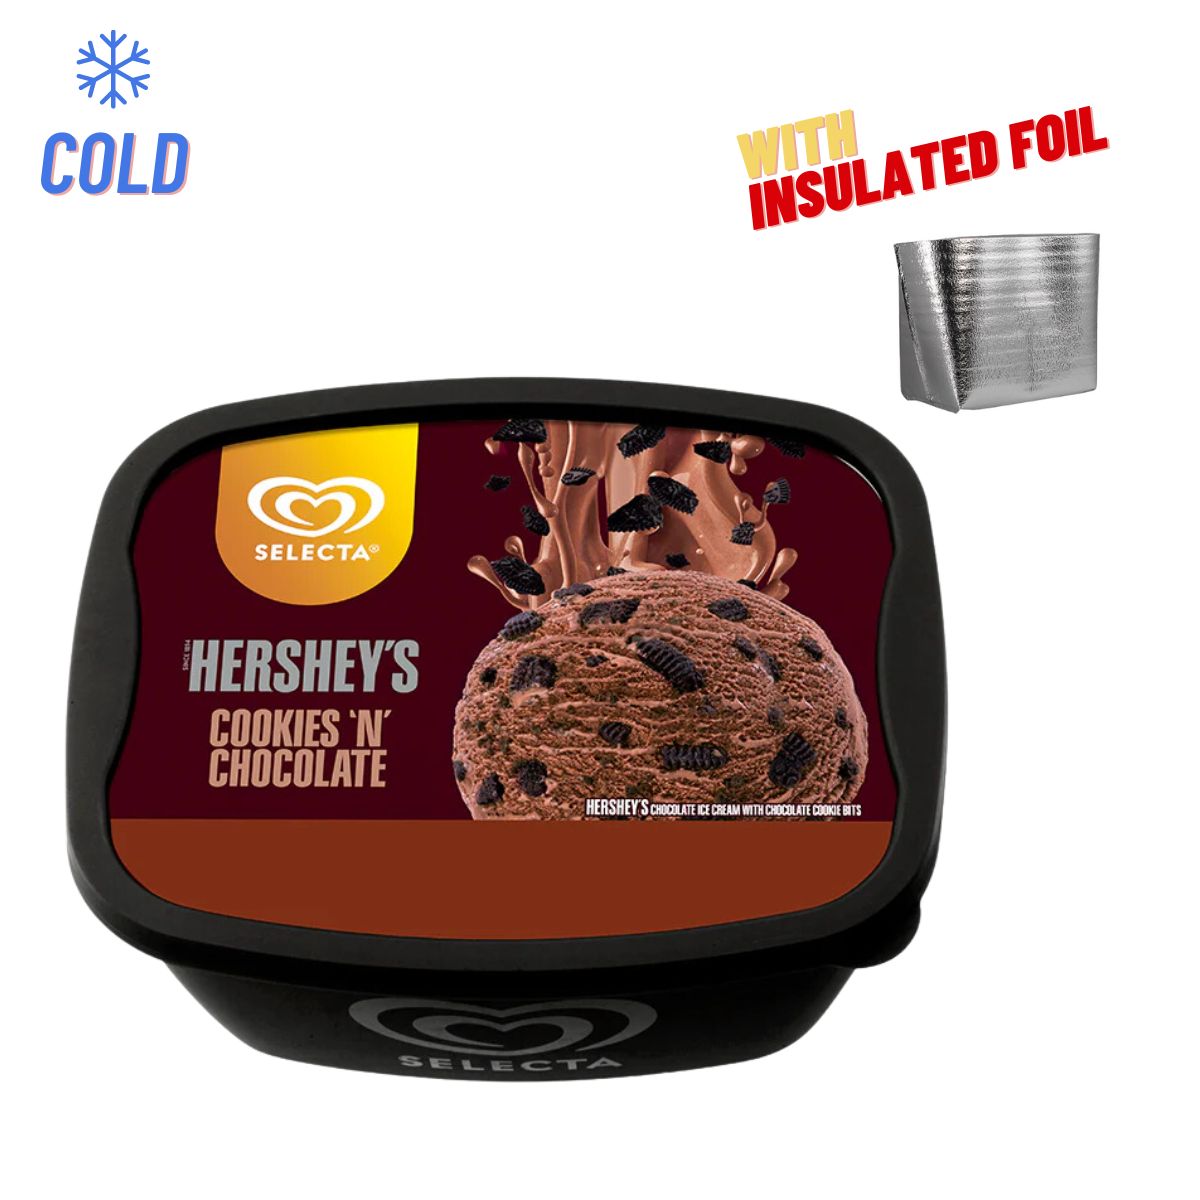 Selecta Hershey's Cookies N' Chocolate 1.3L